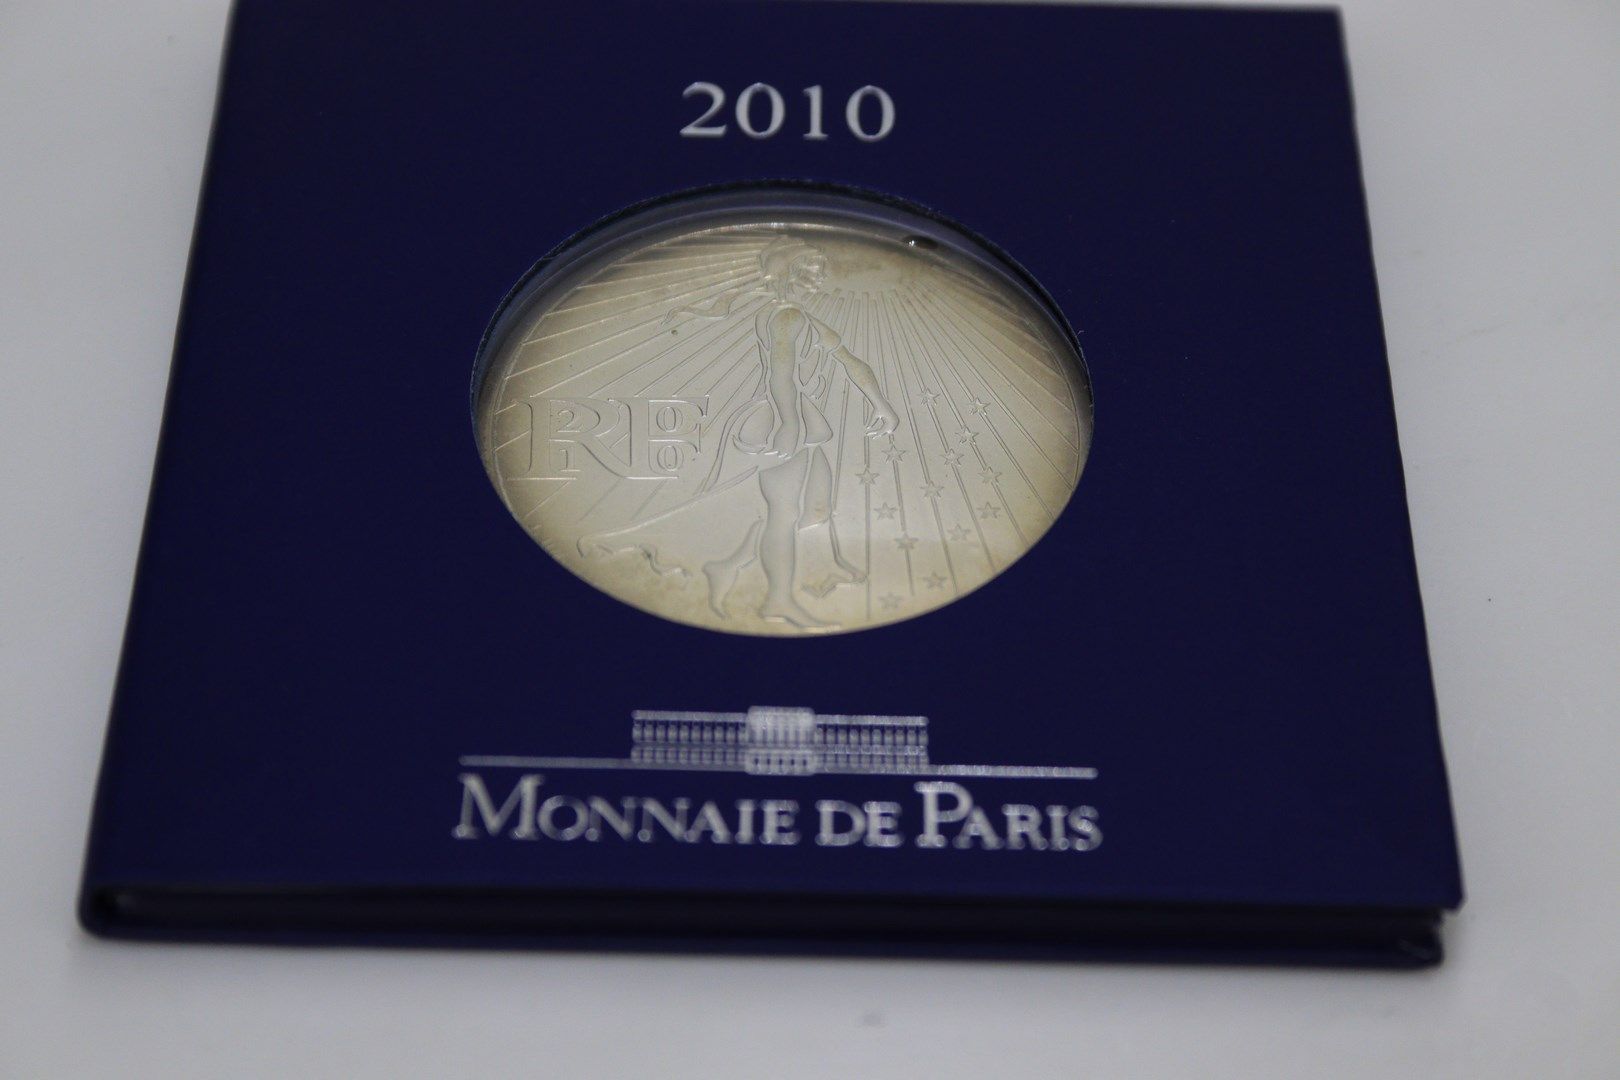 Null 巴黎薄荷糖
来自巴黎大区的4枚银币，包括：: 
- 两枚100欧元硬币(2011年) 
- 两枚50欧元硬币(210)
在他们的口袋里